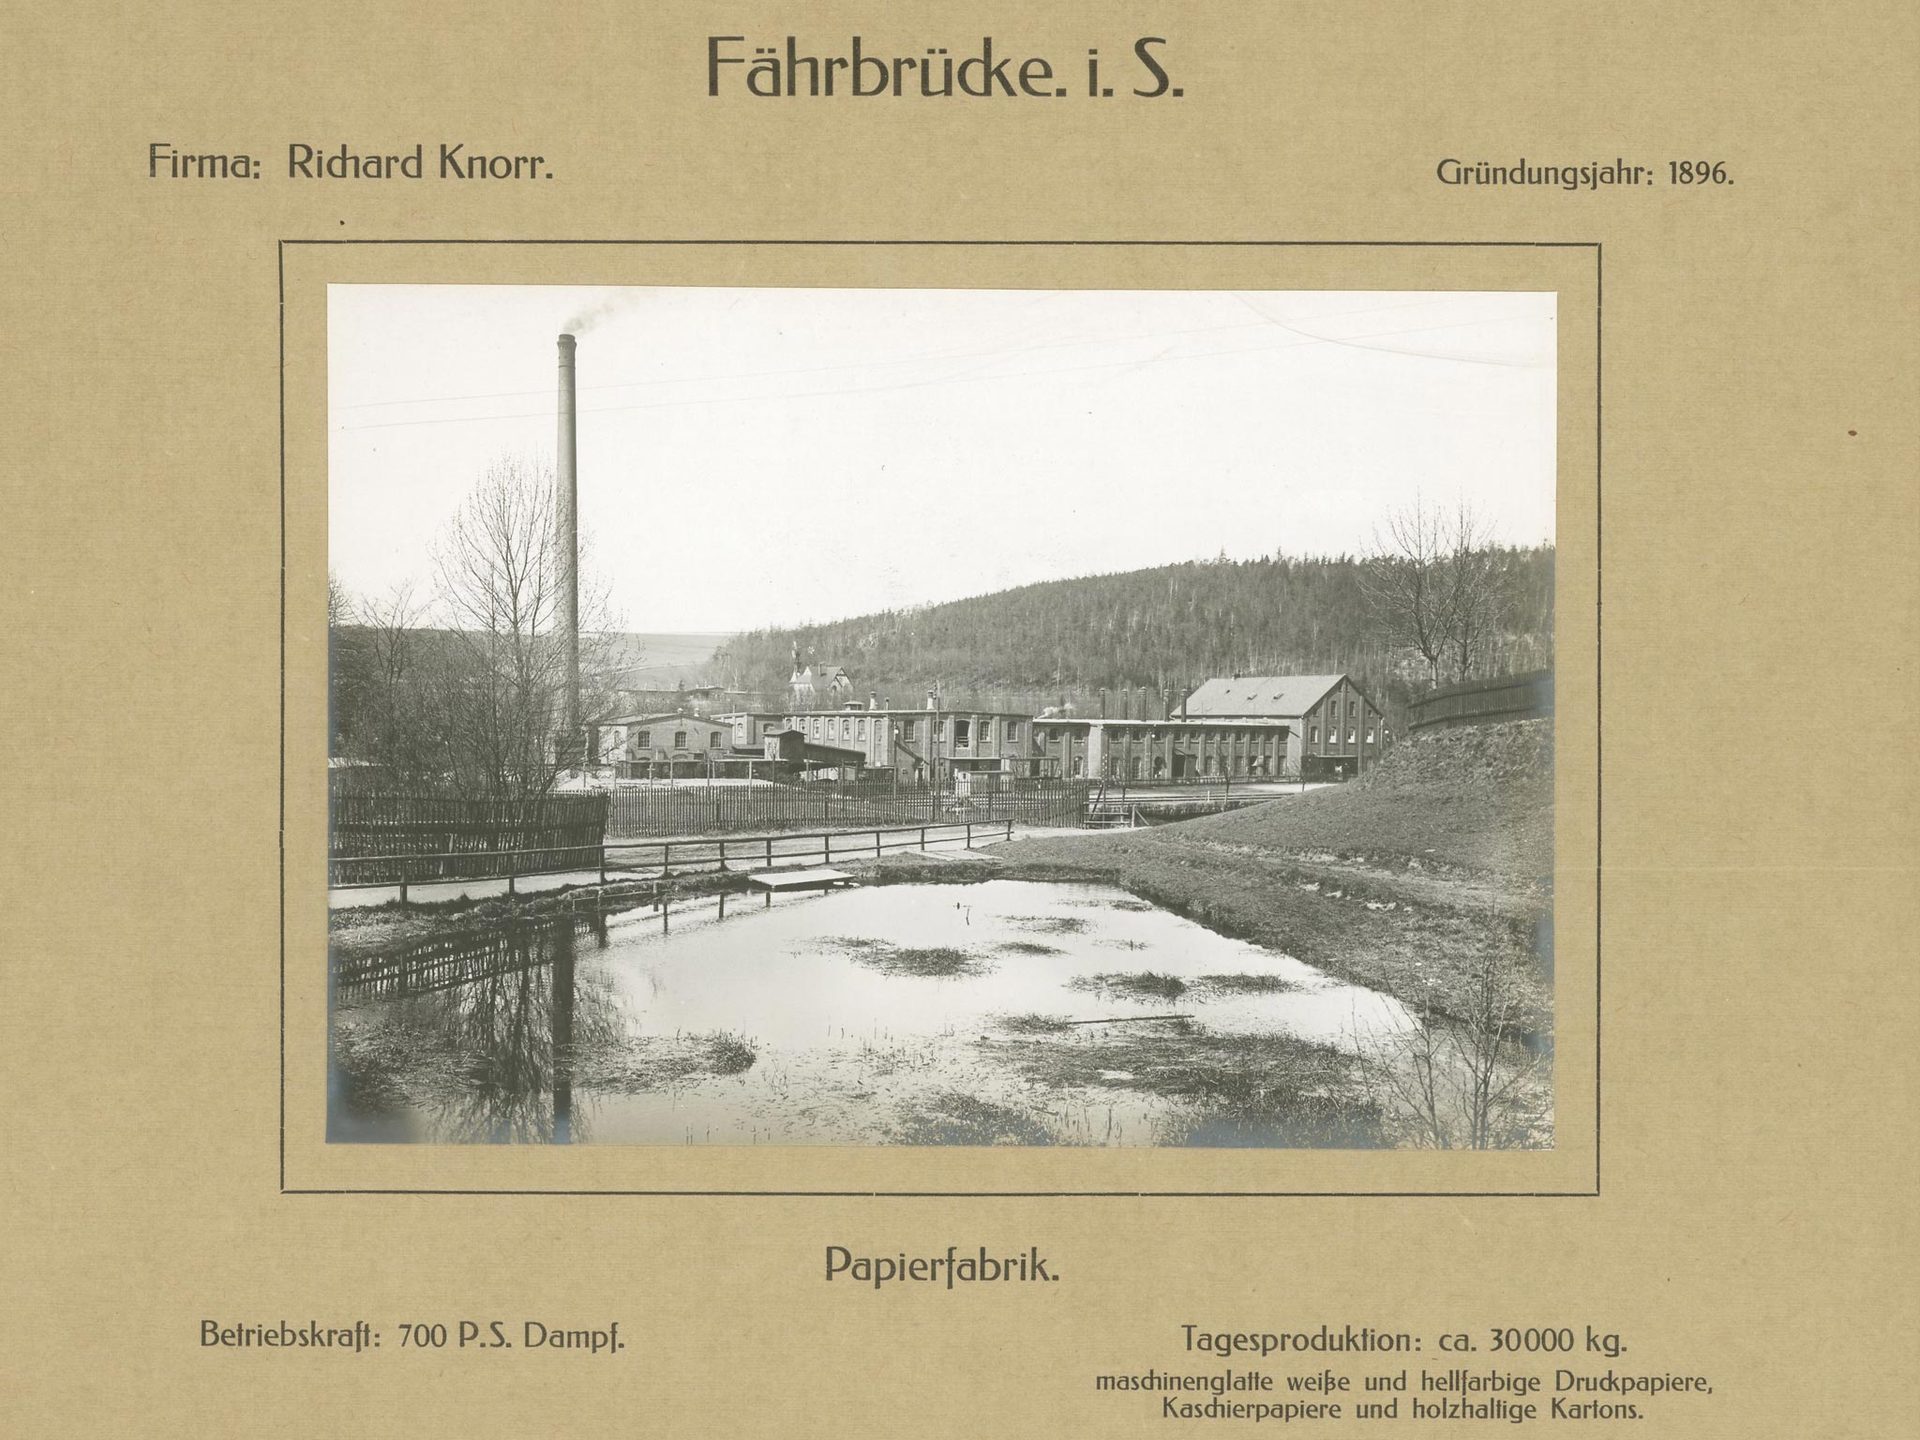 Papierfabrik Richard Knorr, Fährbrücke in Sachsen